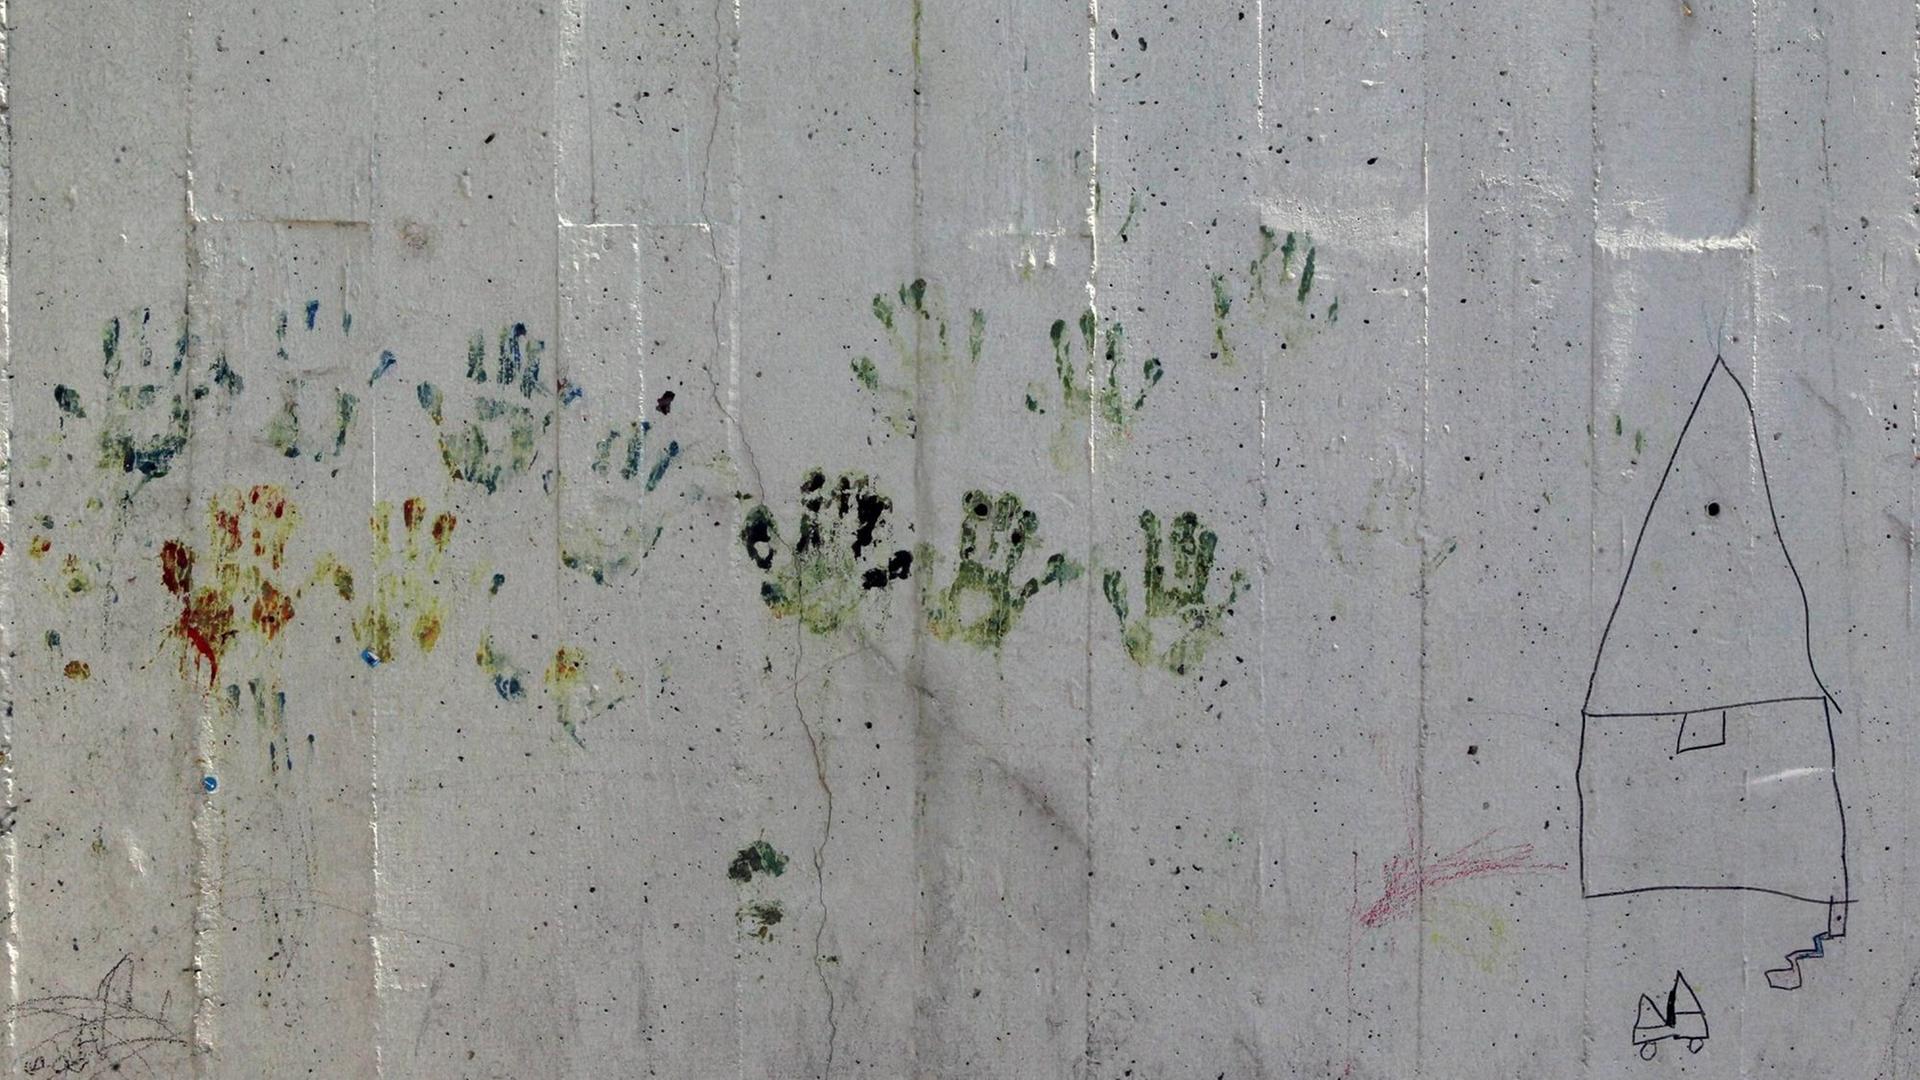 Flüchtlinge haben an einer Mauer im Hafen Piräus ihre Handabdrücke hinterlassen.